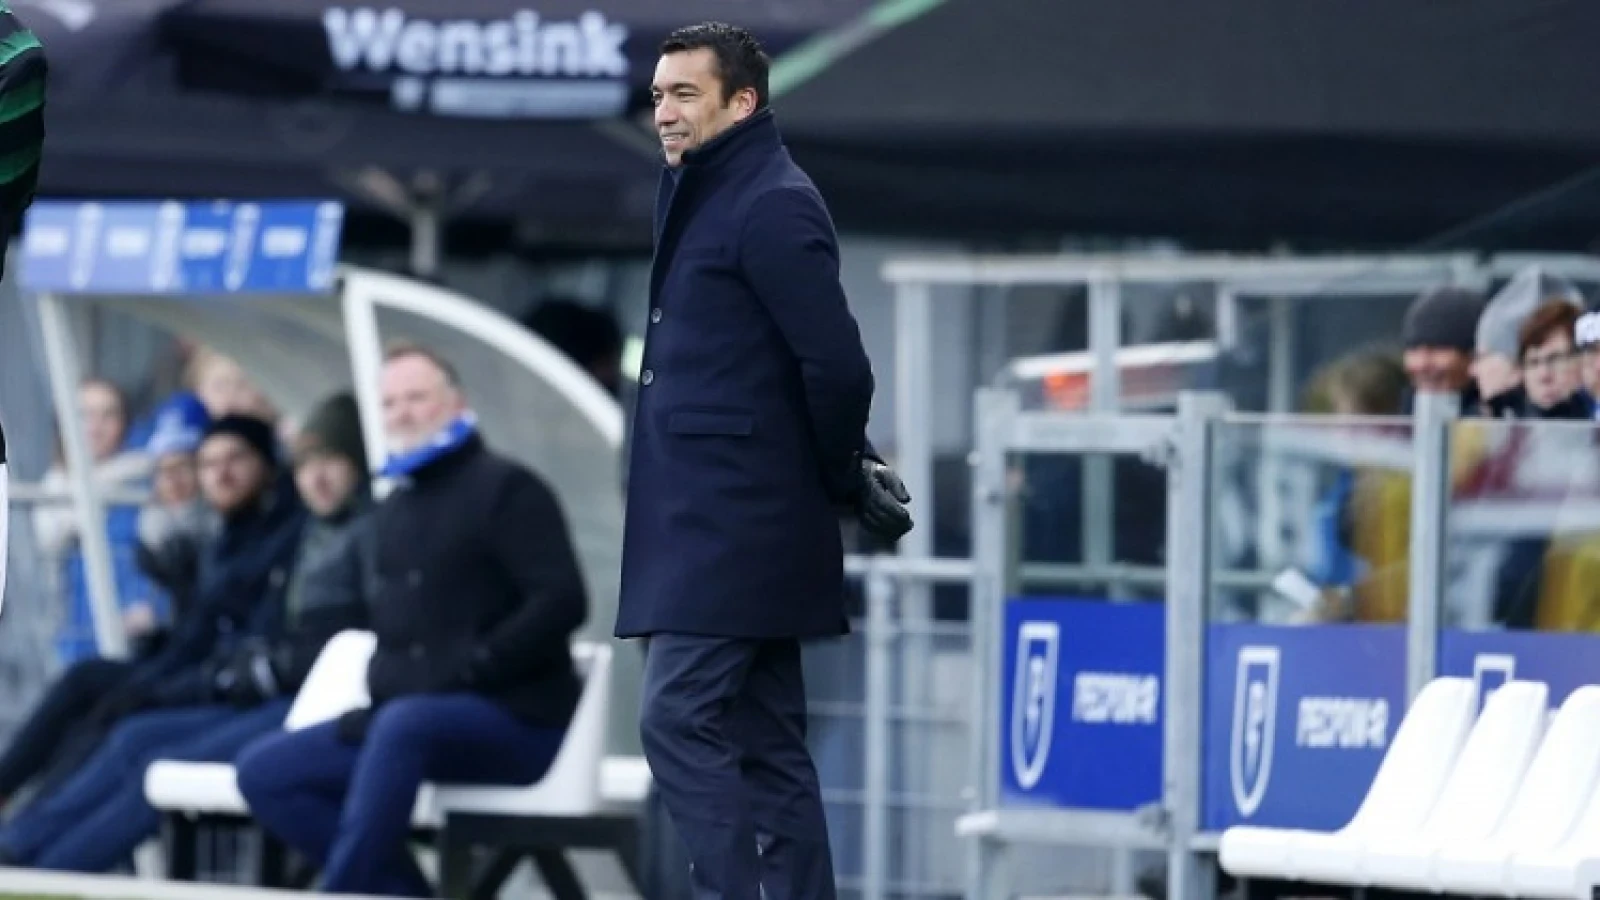 OPSTELLING | Van Bronckhorst stelt veel reservespelers op tegen Willem II